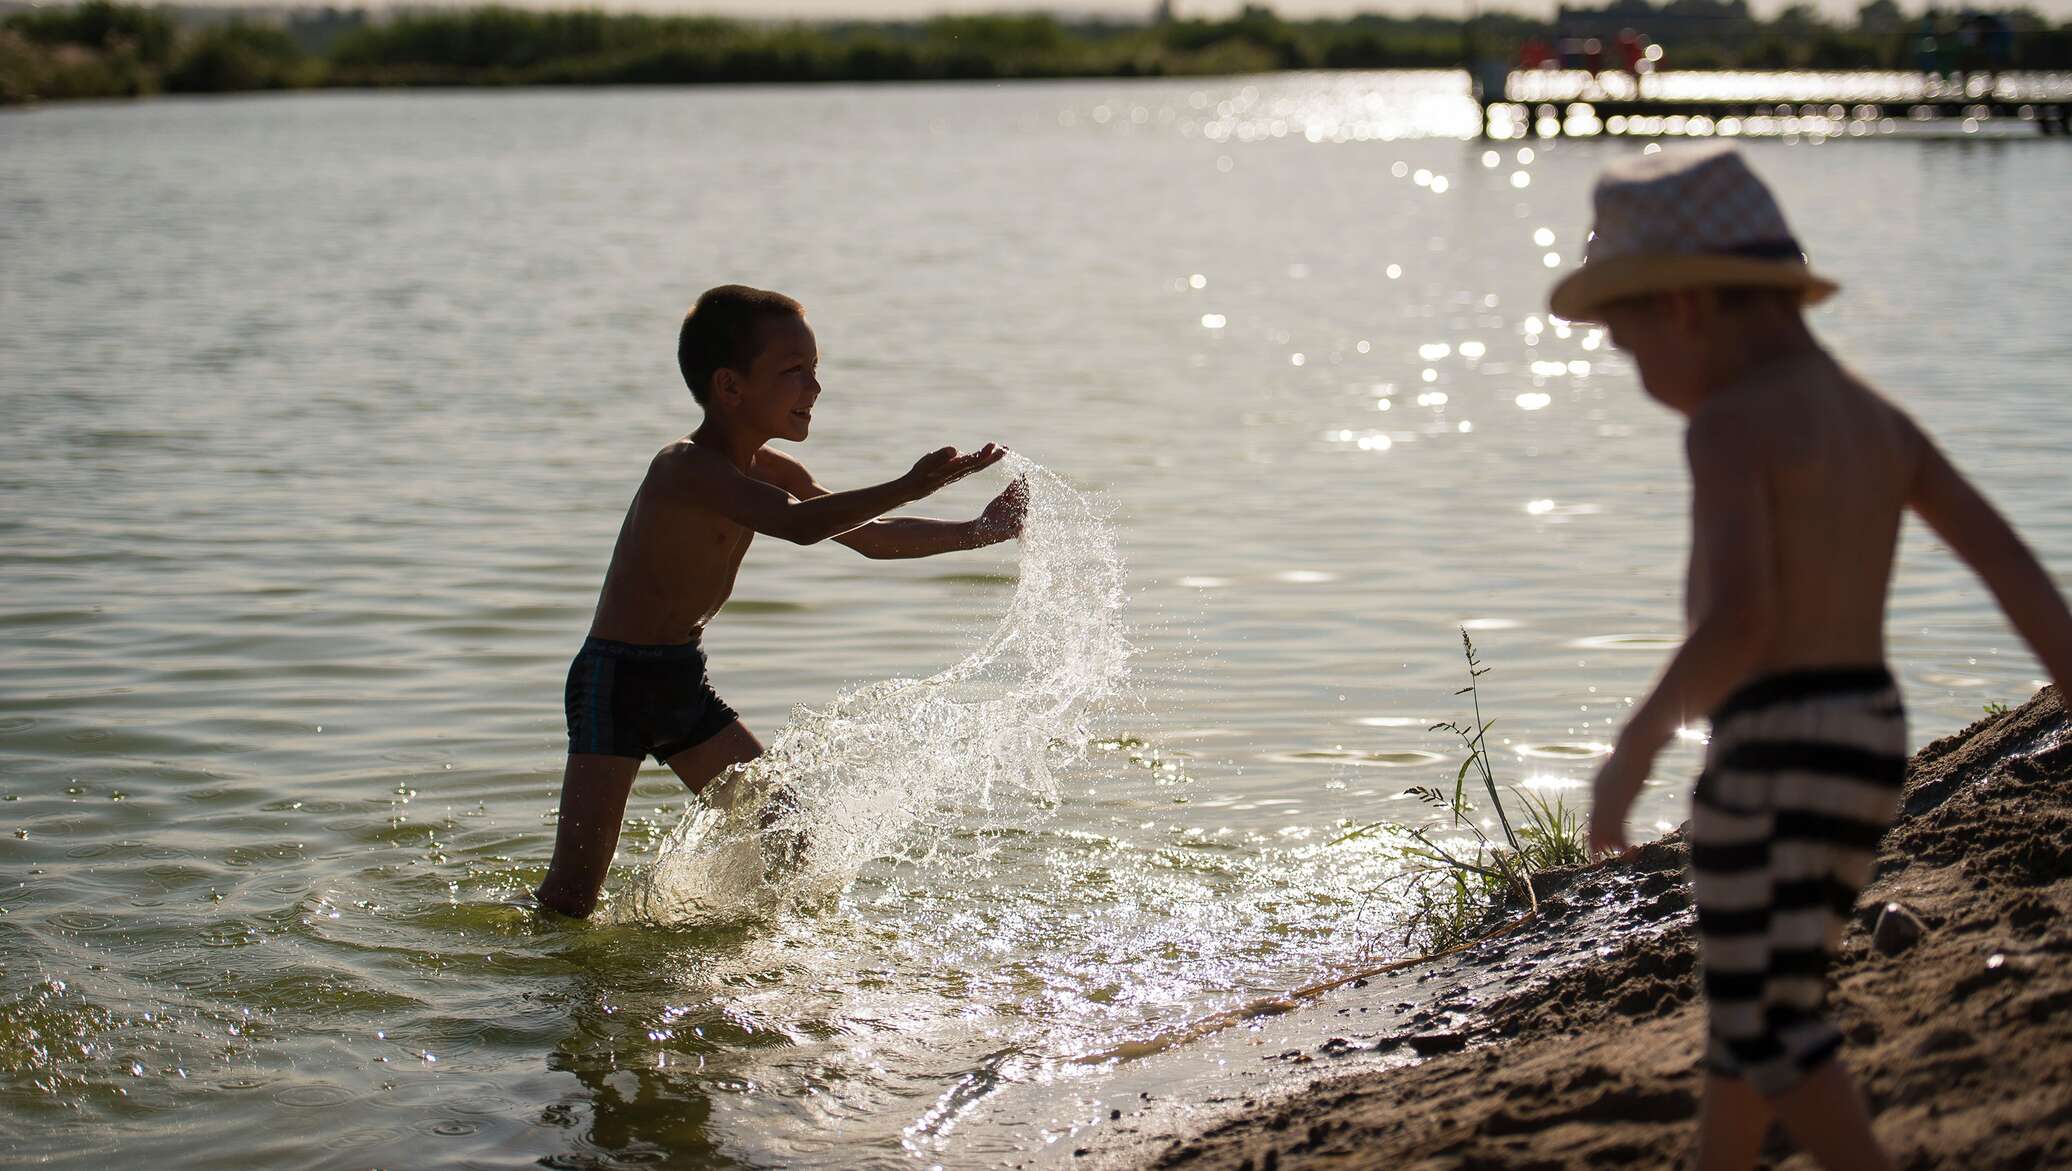 Зеленый купаться. Дети купаются ВМ озере. Река для детей. Мальчик на реке. Купание на речке.